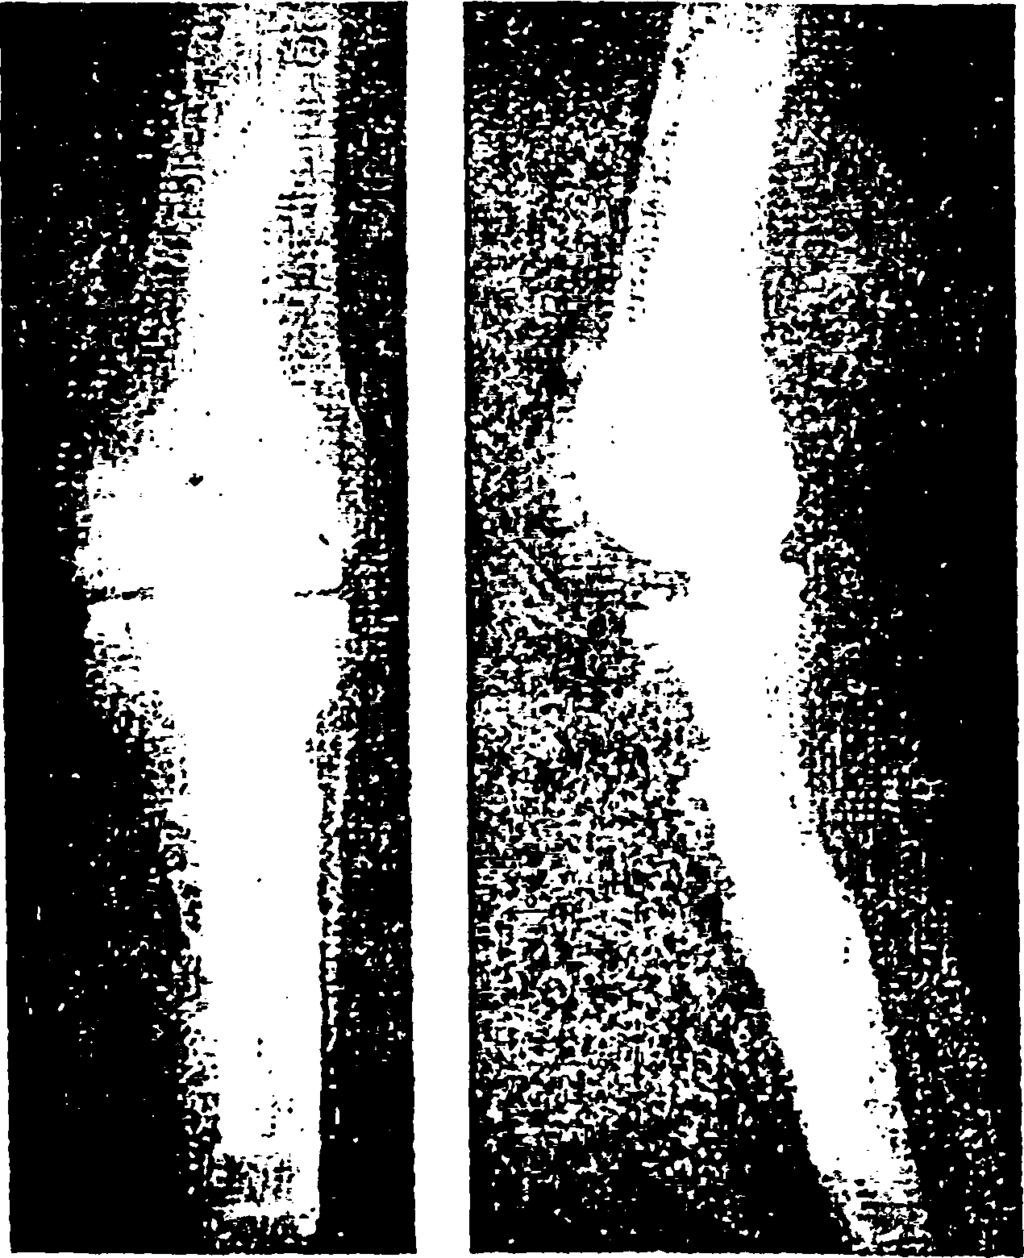 Οι πλάγιοι σύνδεσμοι μπορούν να αποκατασταθούν, εάν όμως αυτό δεν είναι δυνατόν, τότε θα πρέπει να χρησιμοποιηθεί ειδική ολική αρθροπλαστική γόνατος (constrained).